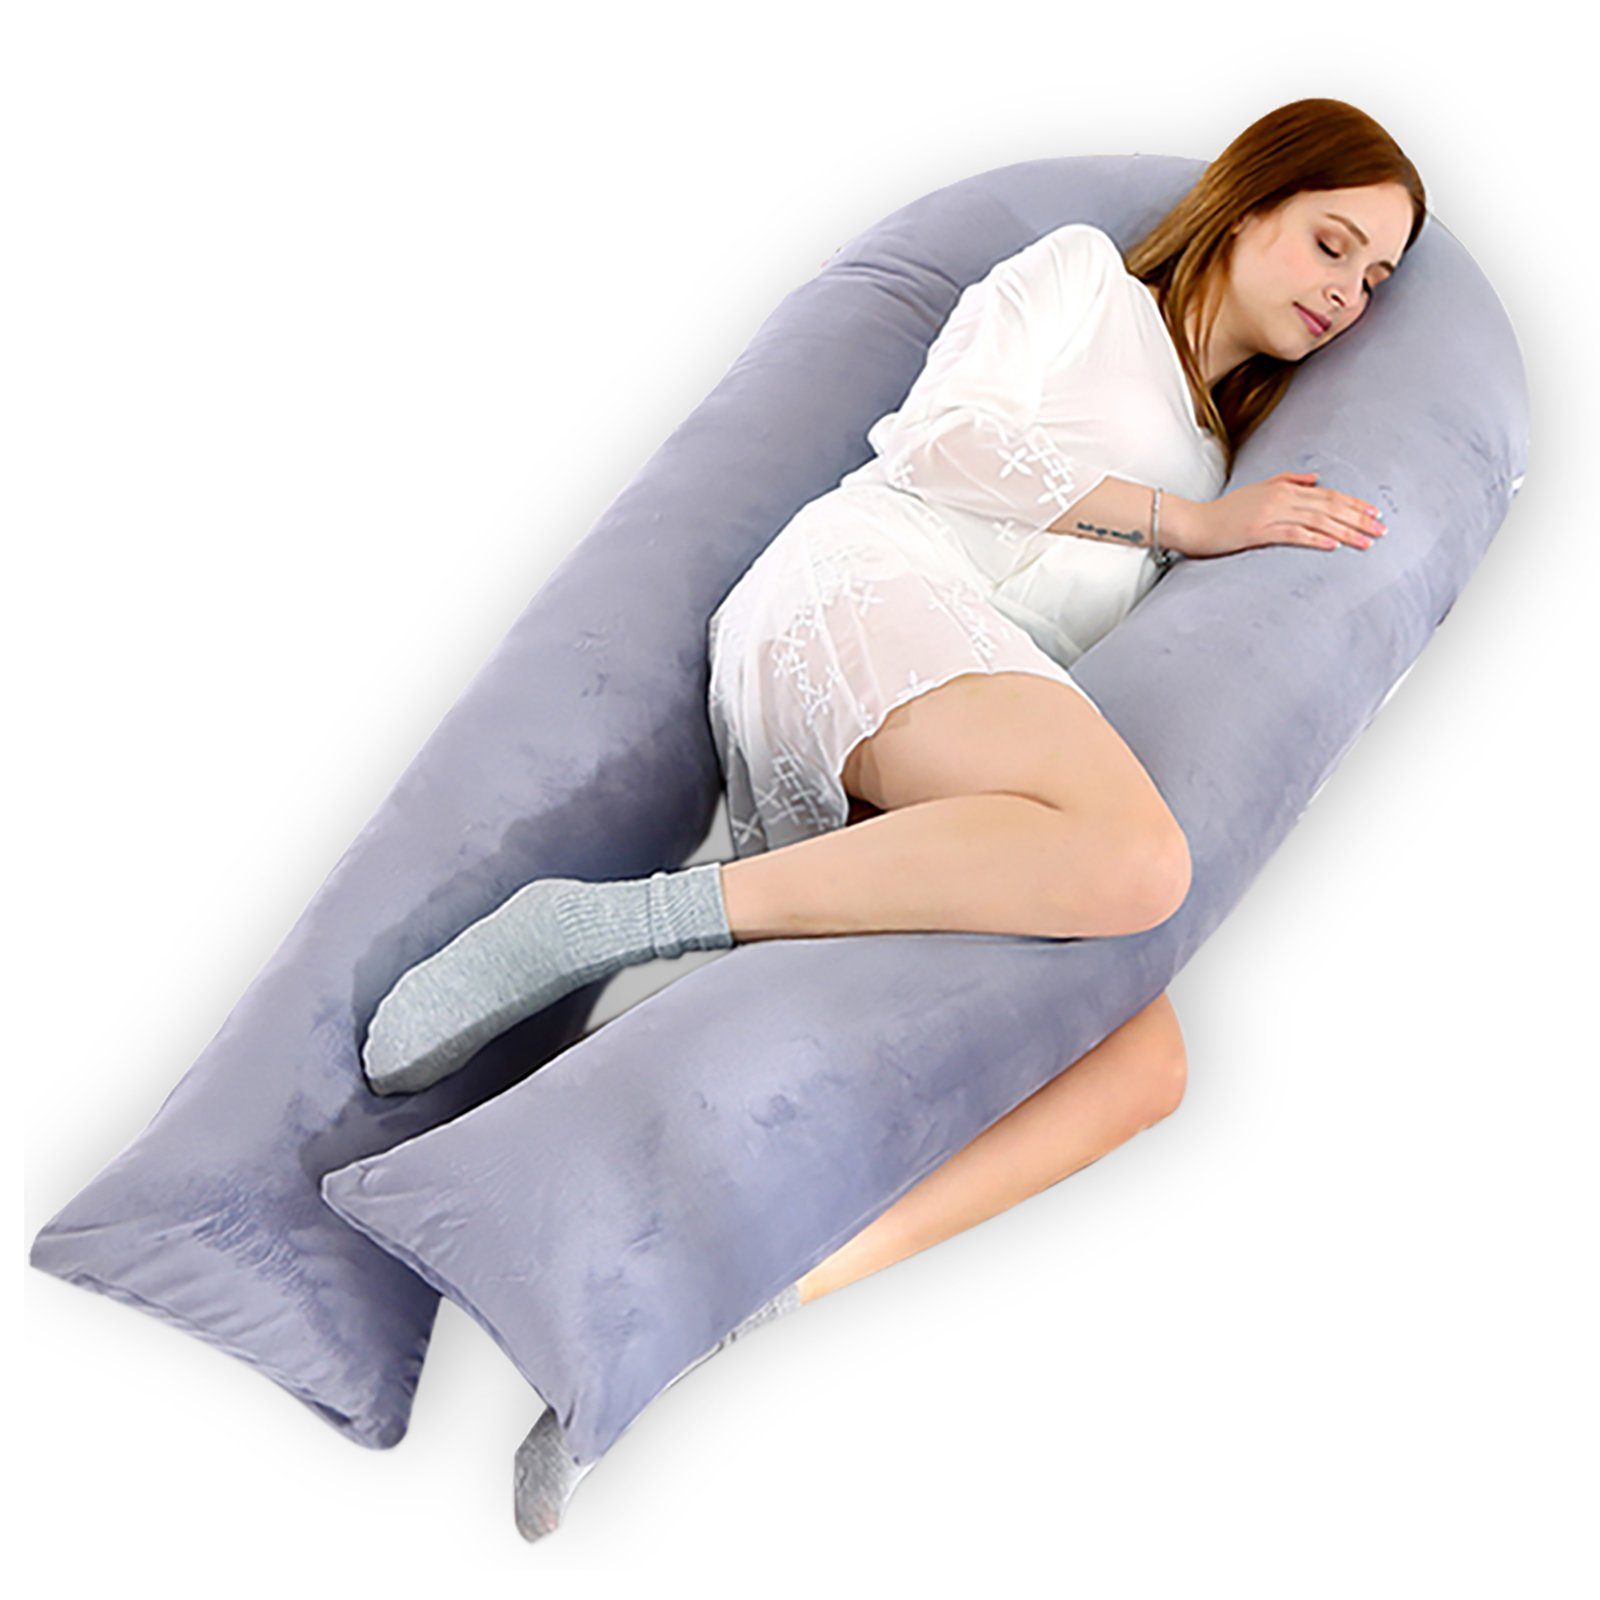 CALIYO Seitenschläferkissen Stillkissen, U-förmiges Schwangerschaftskissen  zum Schlafen, Lagerungskissen, Seitenschläferkissen ergonomisch geformt,  Body Pillow mit abnehmbarem Bezug